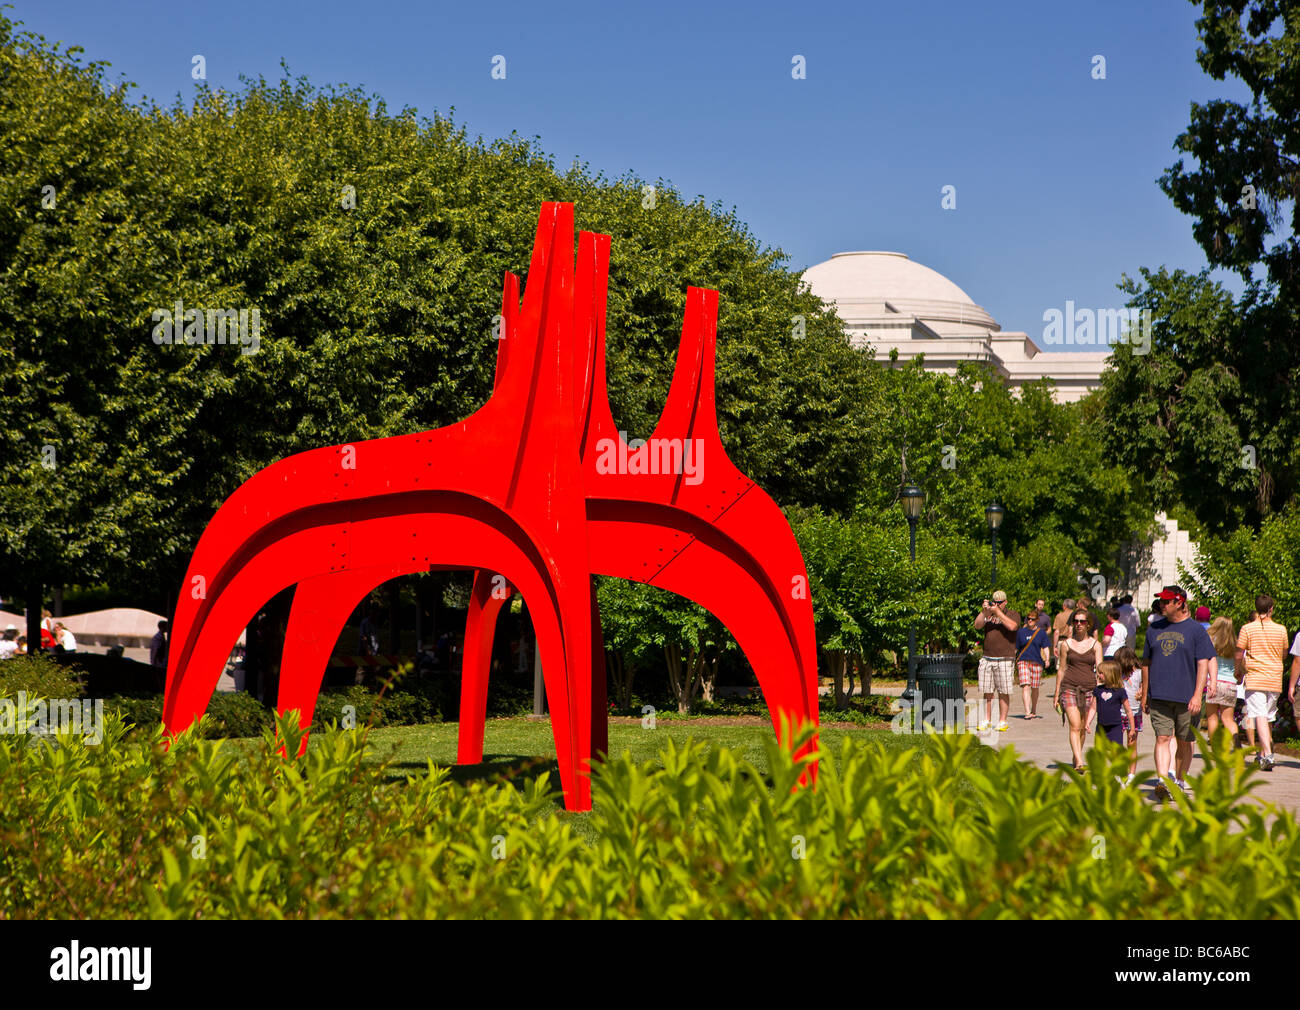 WASHINGTON DC USA Cheval Rouge sculpture d'Alexander Calder à la National Gallery of Art Sculpture Garden Banque D'Images